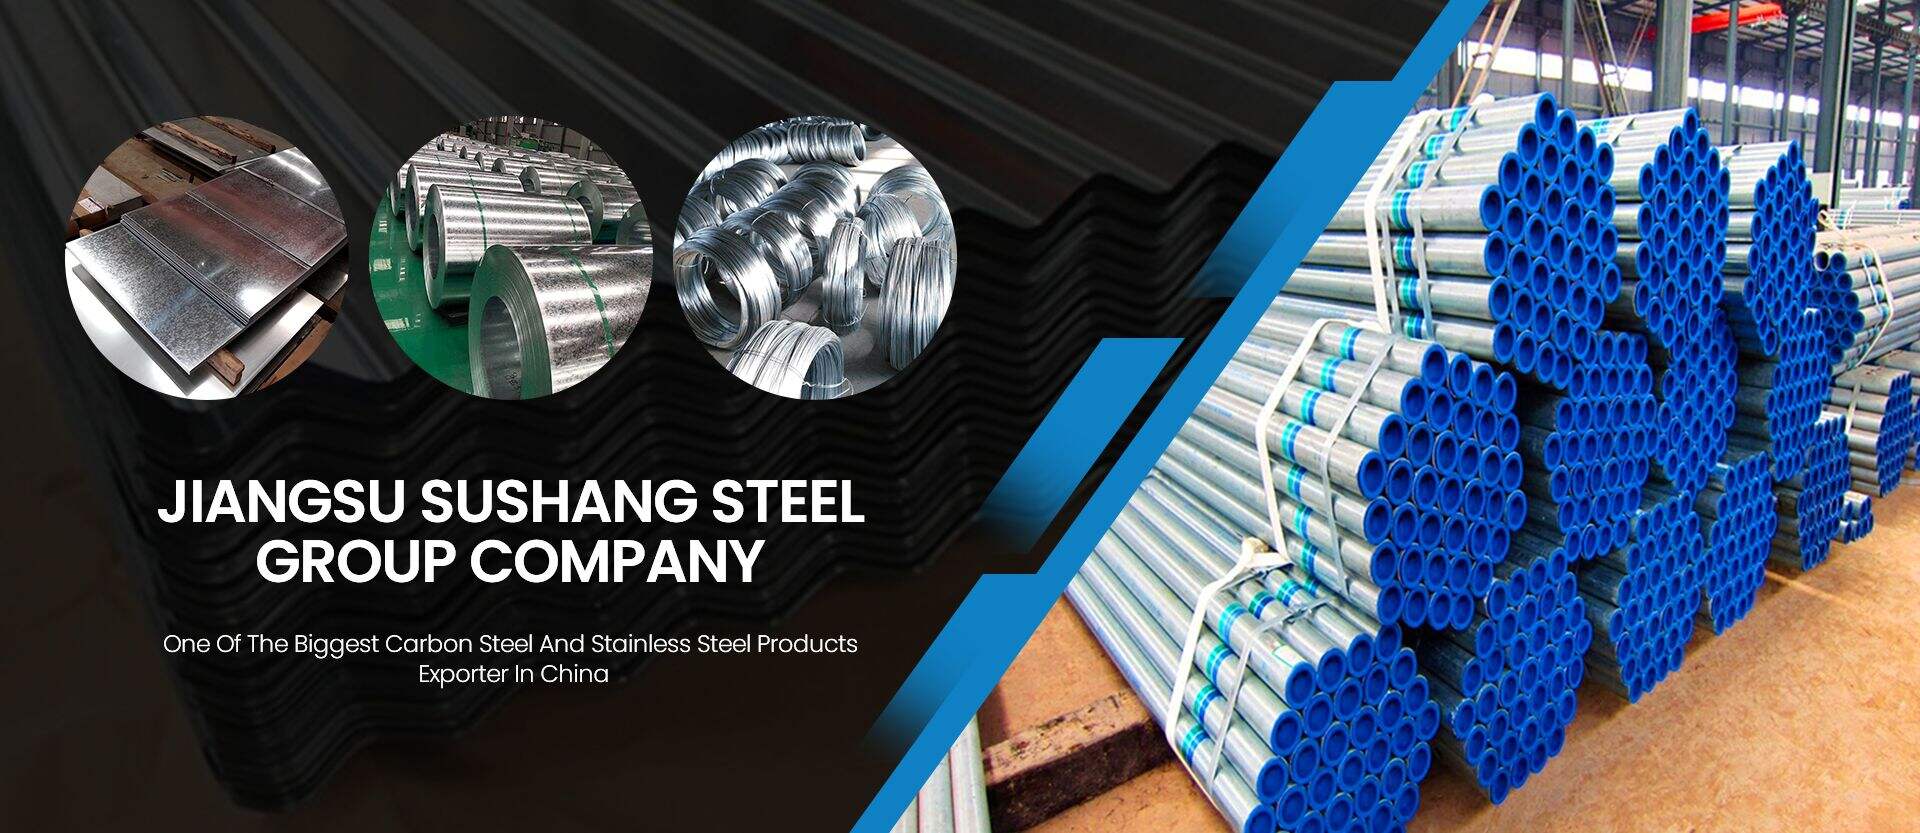 Jiangsu Sushang Steel Group Company